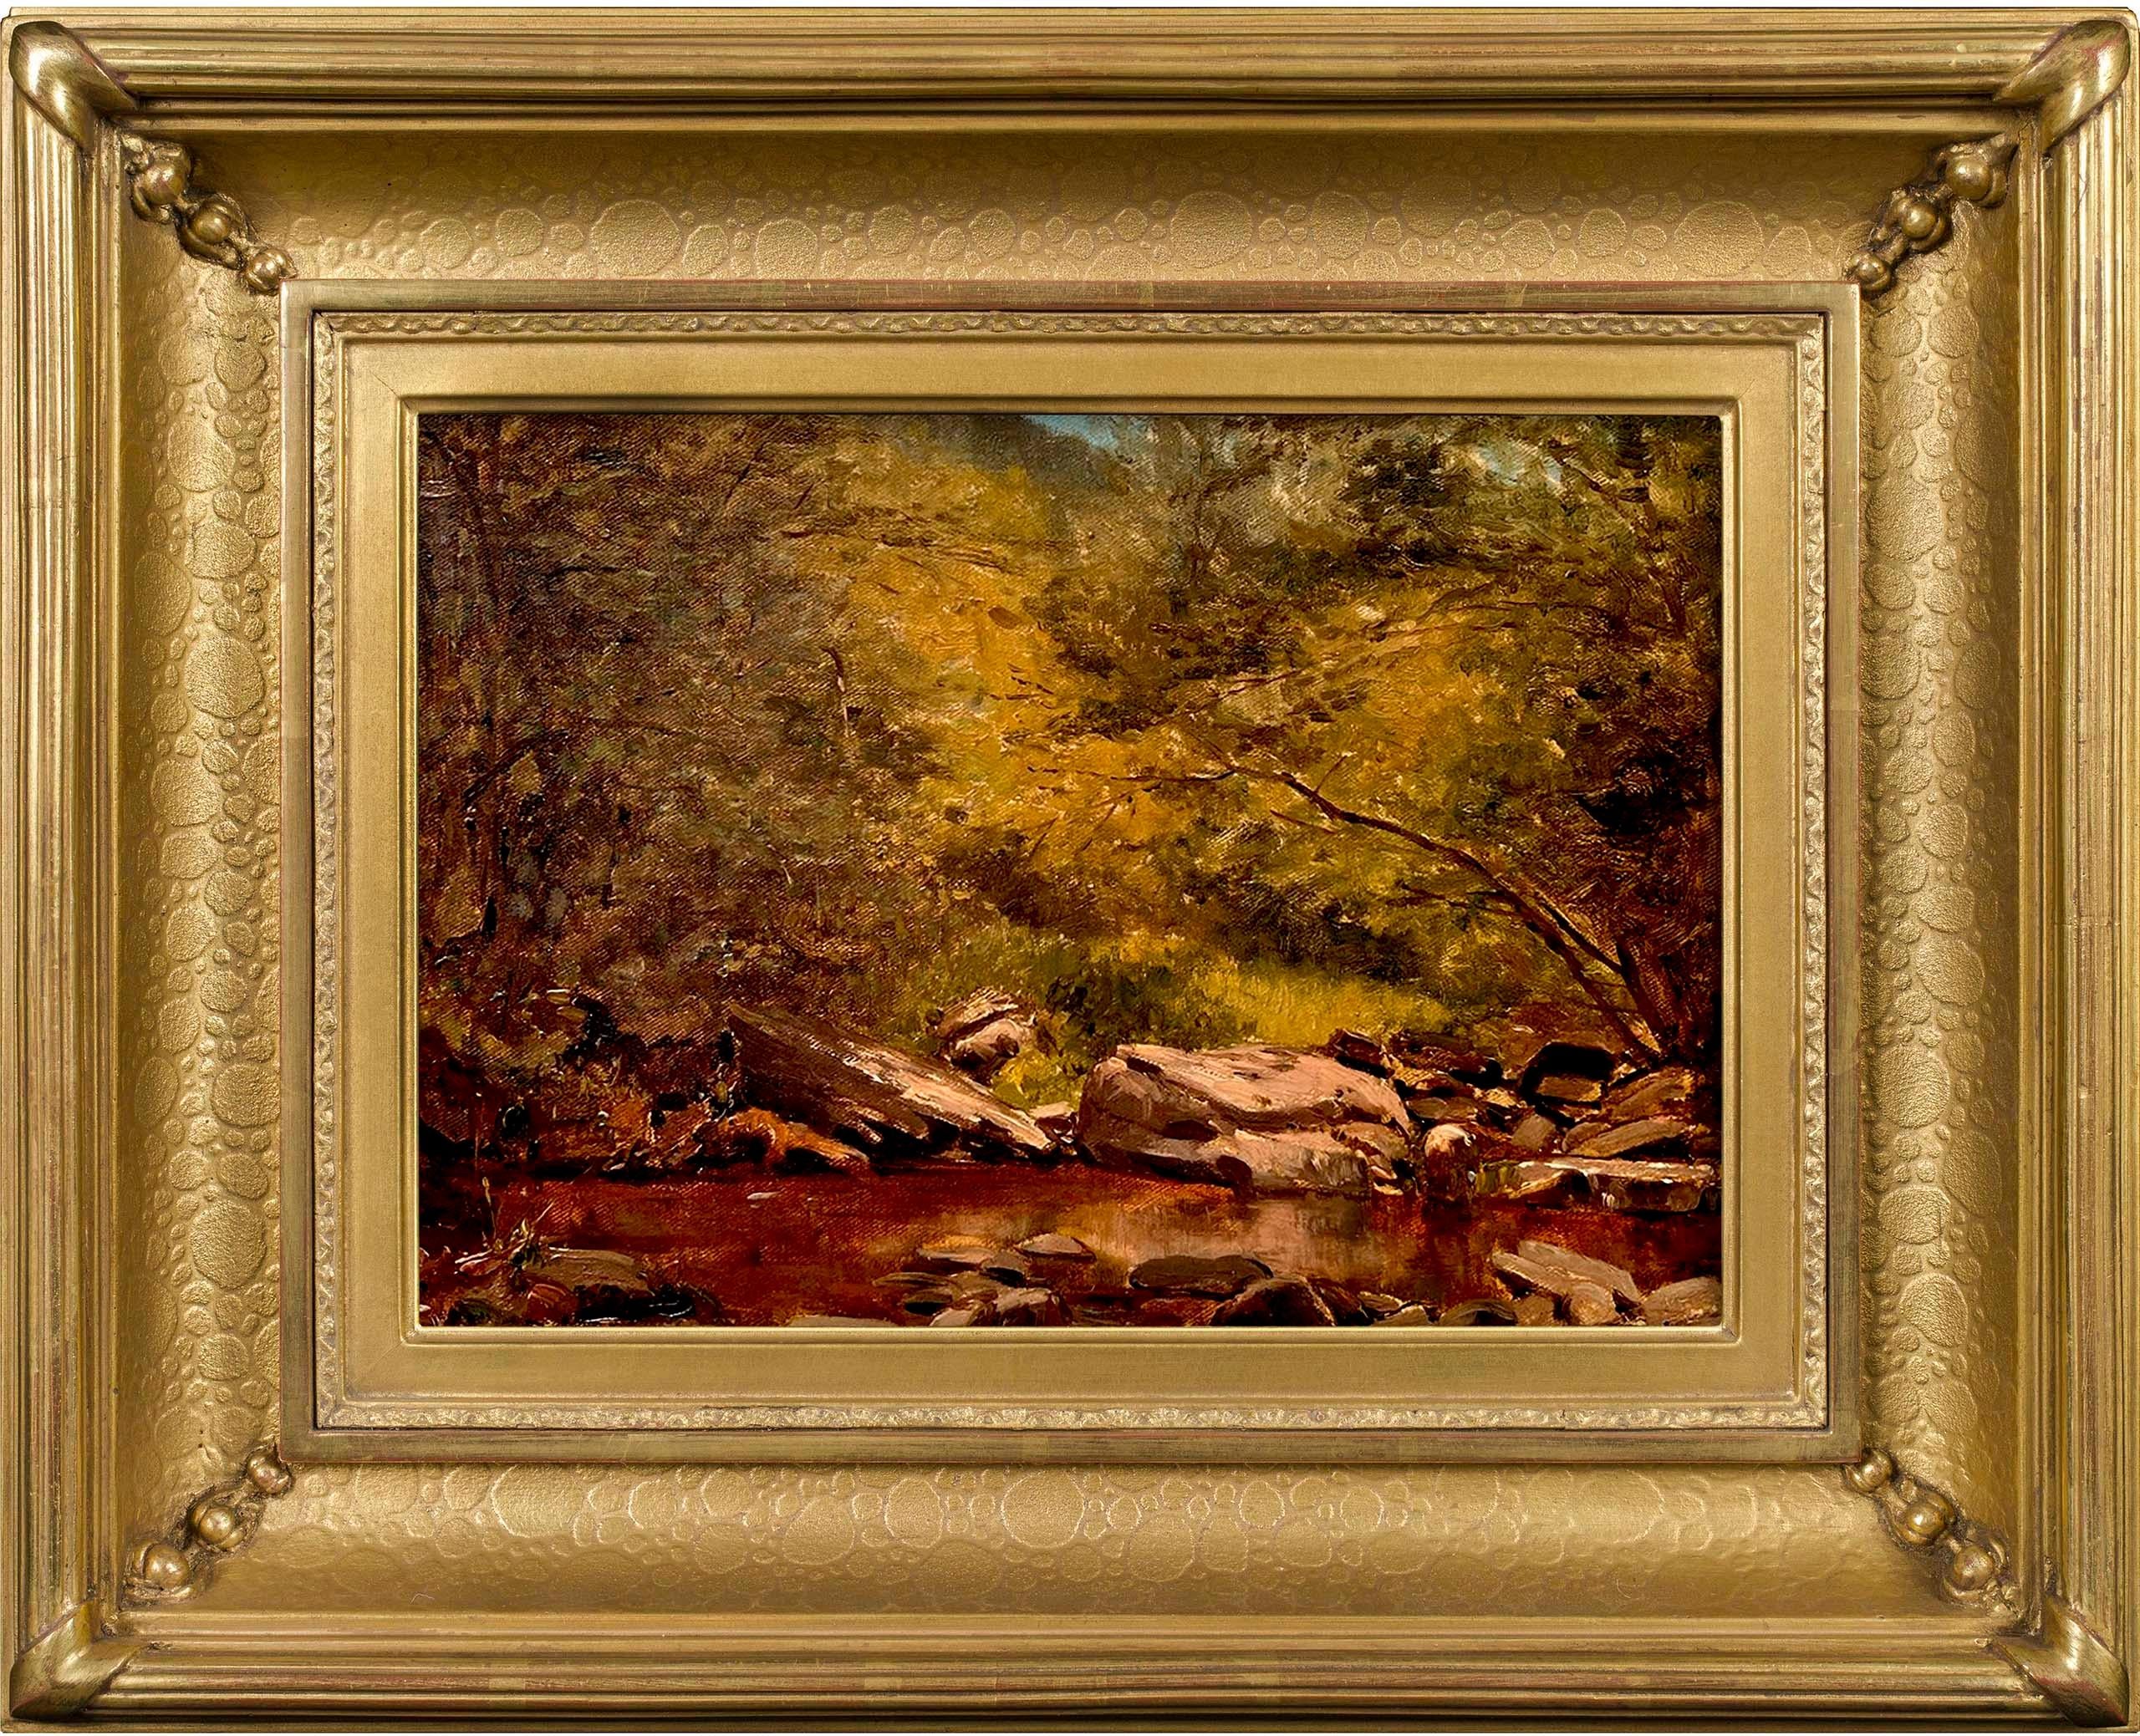 "Mink Hollow Brook", de l'artiste Jervis McEntee (1828-1891), de l'école de la rivière Hudson, dépeint le feuillage luxuriant et le terrain rocailleux.  autour d'un ruisseau des Catskills. Cette peinture à l'huile sur toile du 19e siècle mesure 11 x